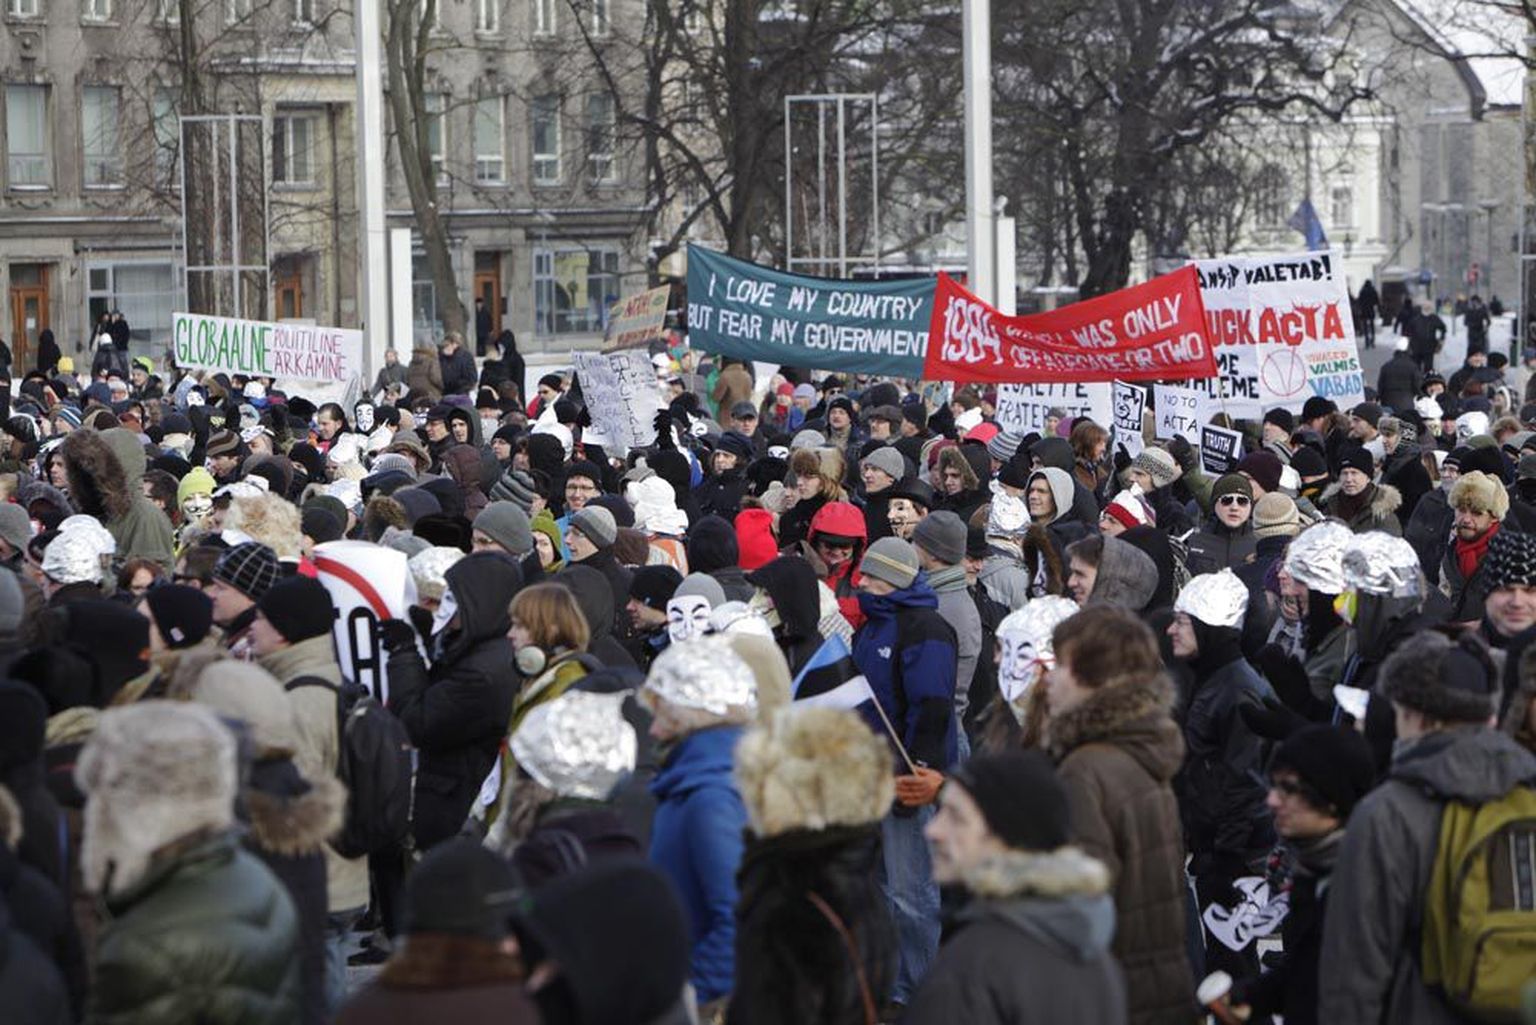 Tallinnas Vabaduse väljakul korraldatud tunniajasele ACTA lepingu vastasele miitingule kogunes ligikaudu 2000 inimest, mis on poole vähem, kui meeleavaldusele esialgu oodati.